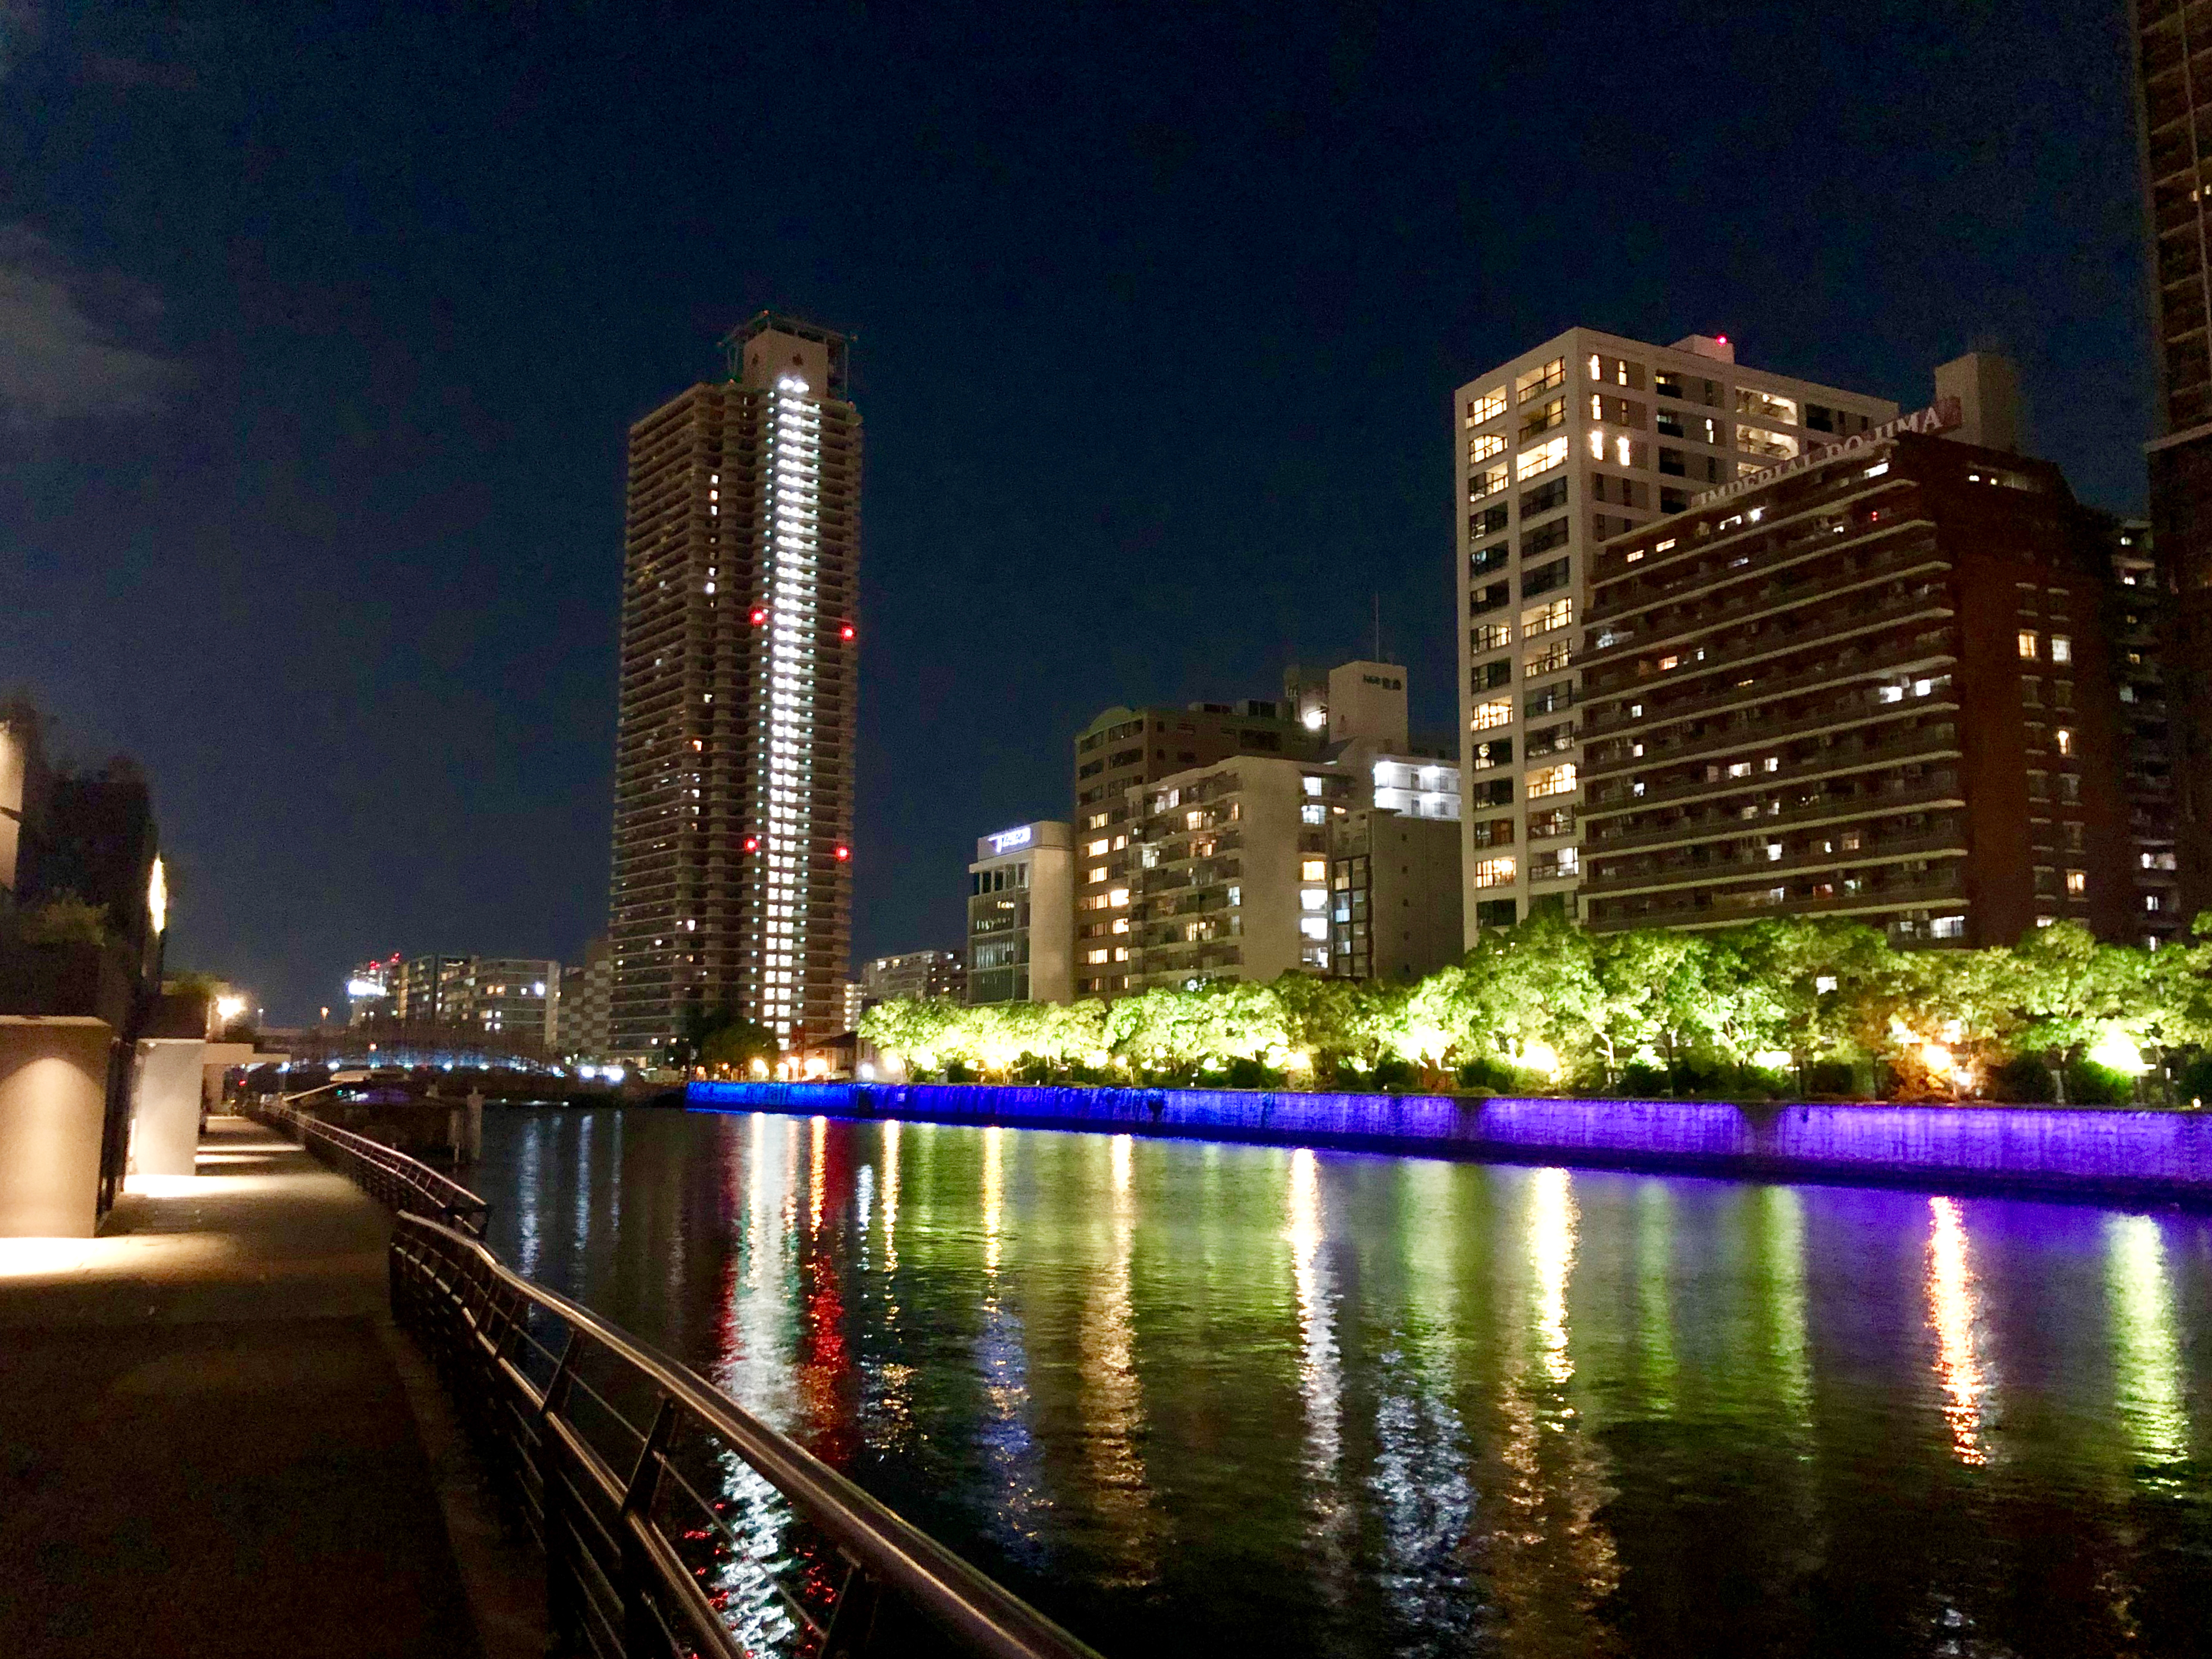 川沿いの夜景 3 無料写真 フリー素材のダウンロードサイト もある